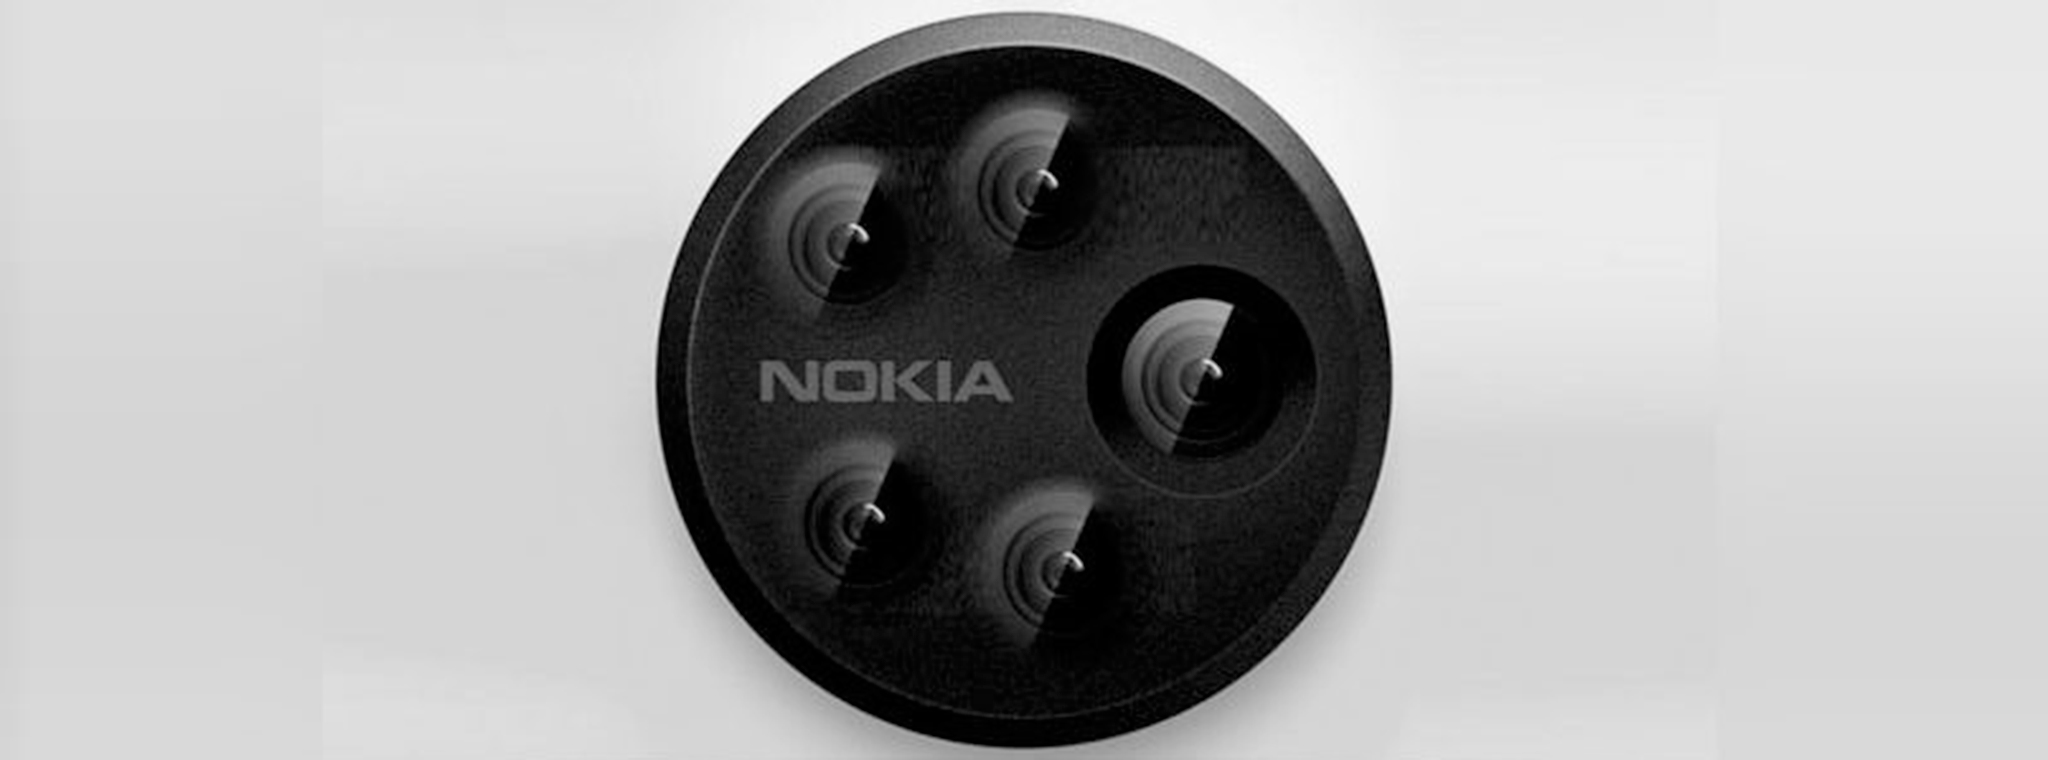 Nokia 10 sẽ có đến 5 camera phía sau?